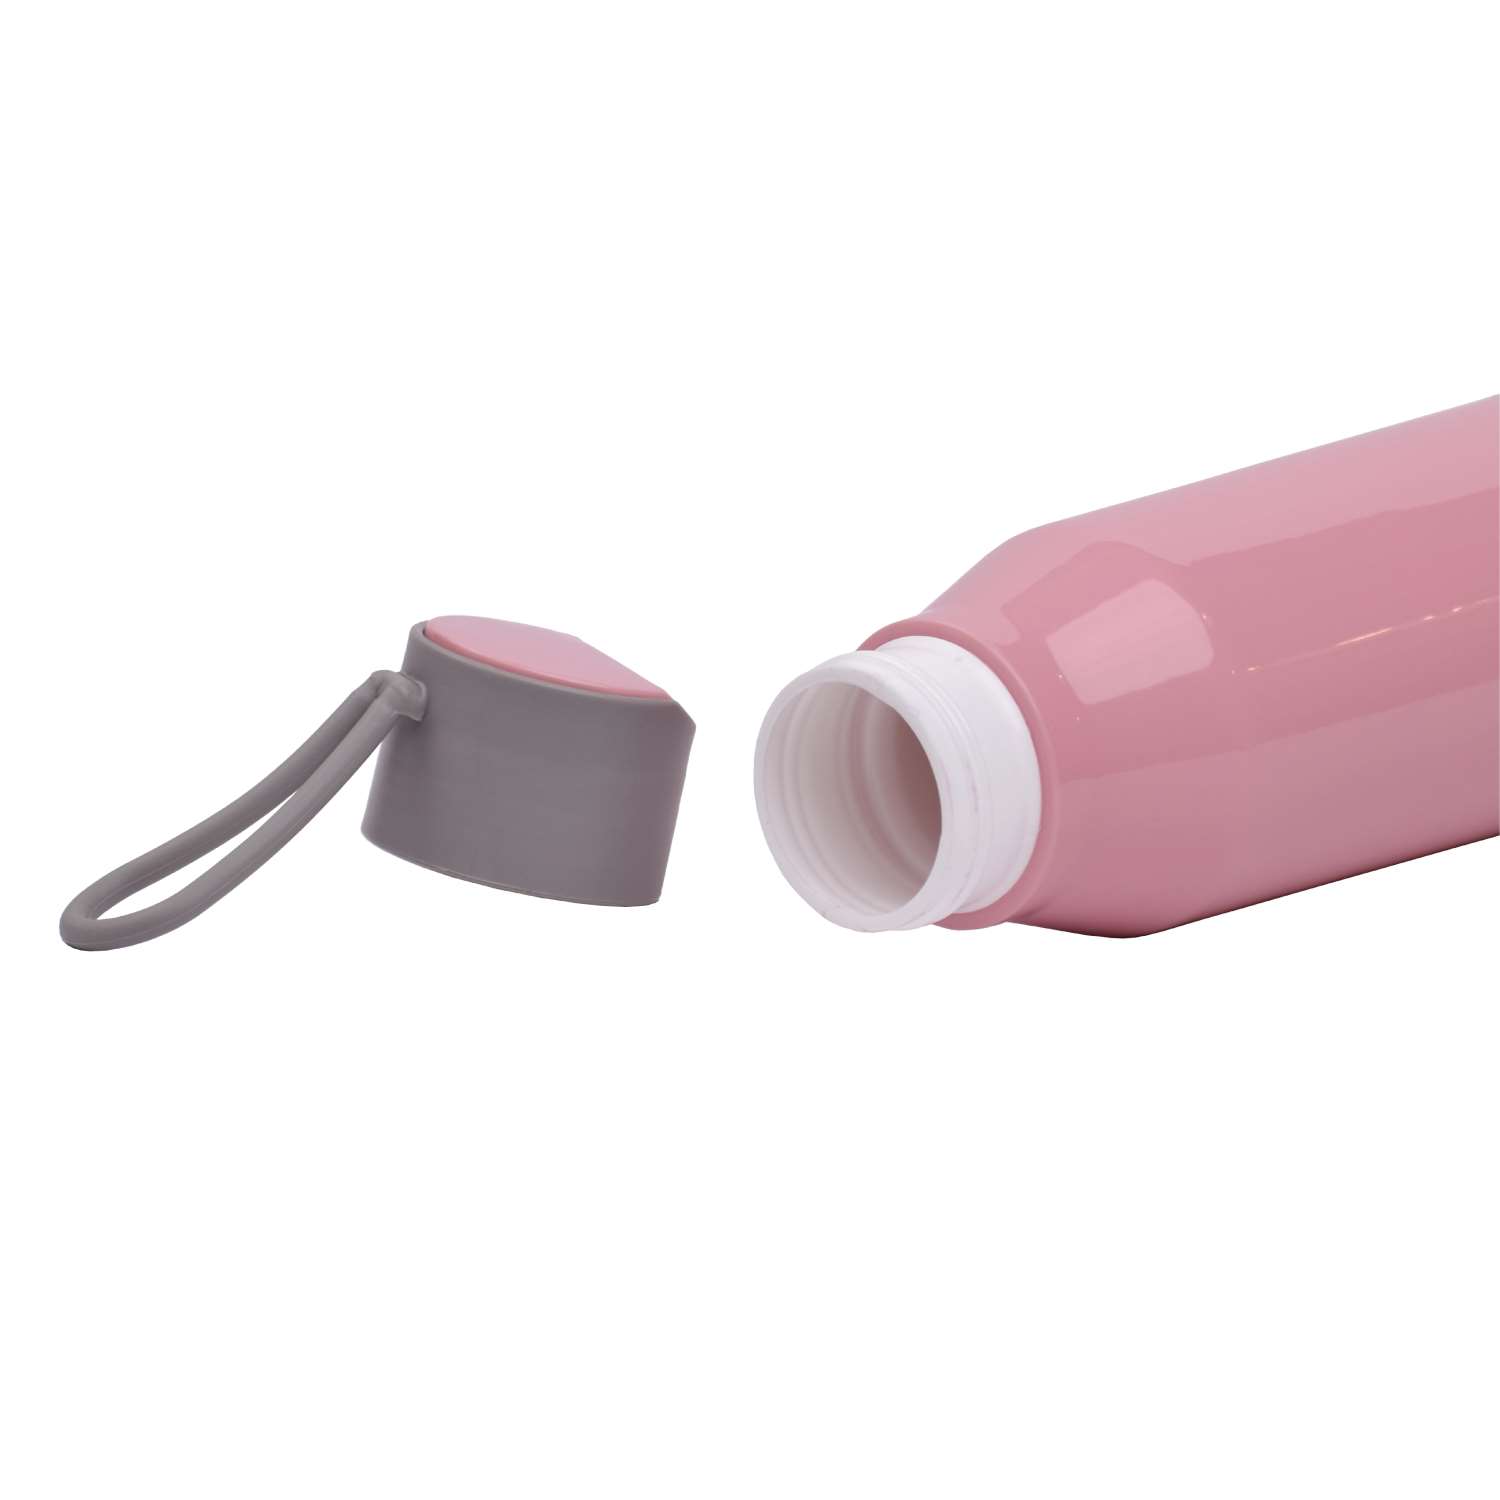 Selvel Bolt Plastic Water Bottle Pink 500Ml